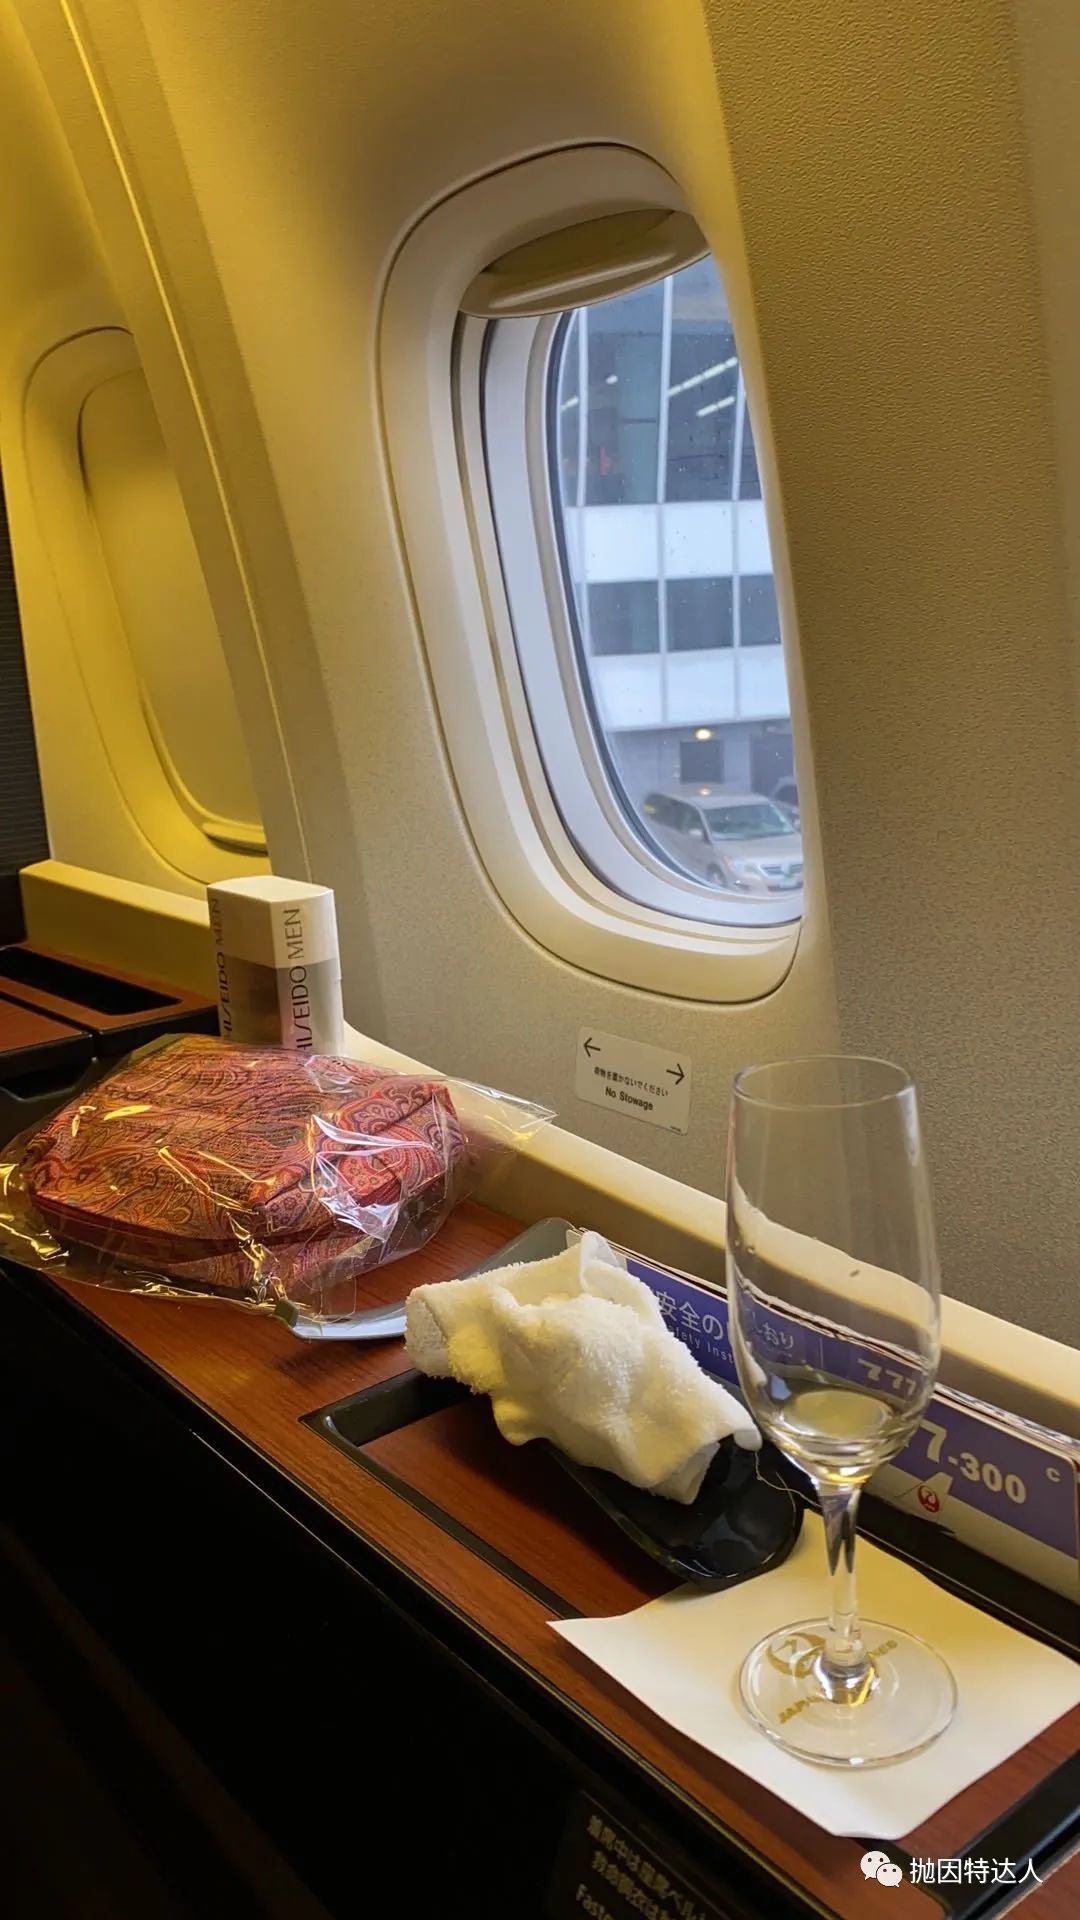 《空中最强饕餮盛宴 - 日本航空777-300ER（纽约 - 成田）头等舱体验报告》